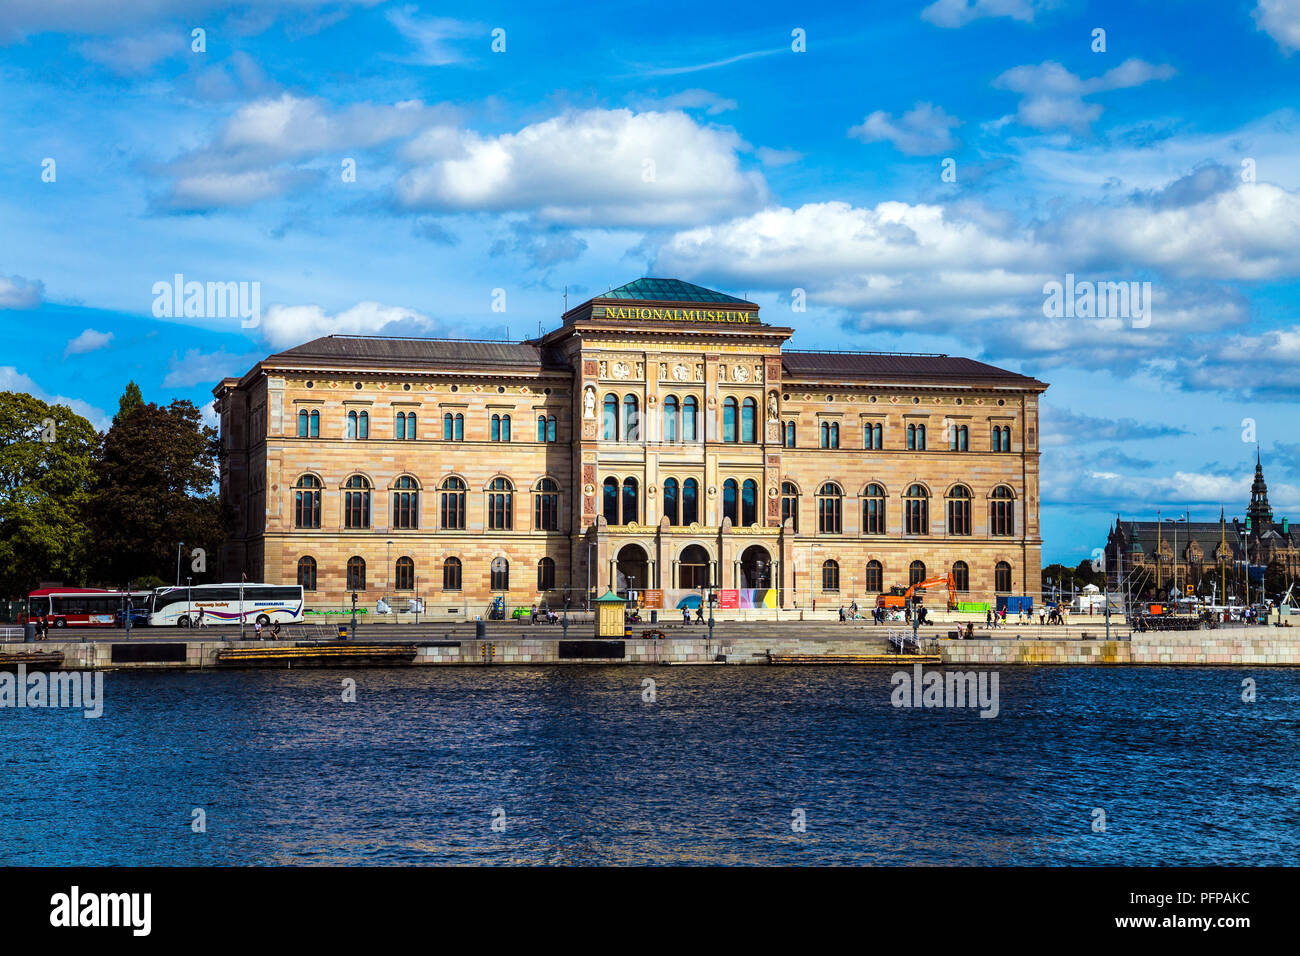 El exterior del edificio del Museo de la Nación (Nationalmuseum) en Estocolmo, colinabo Foto de stock